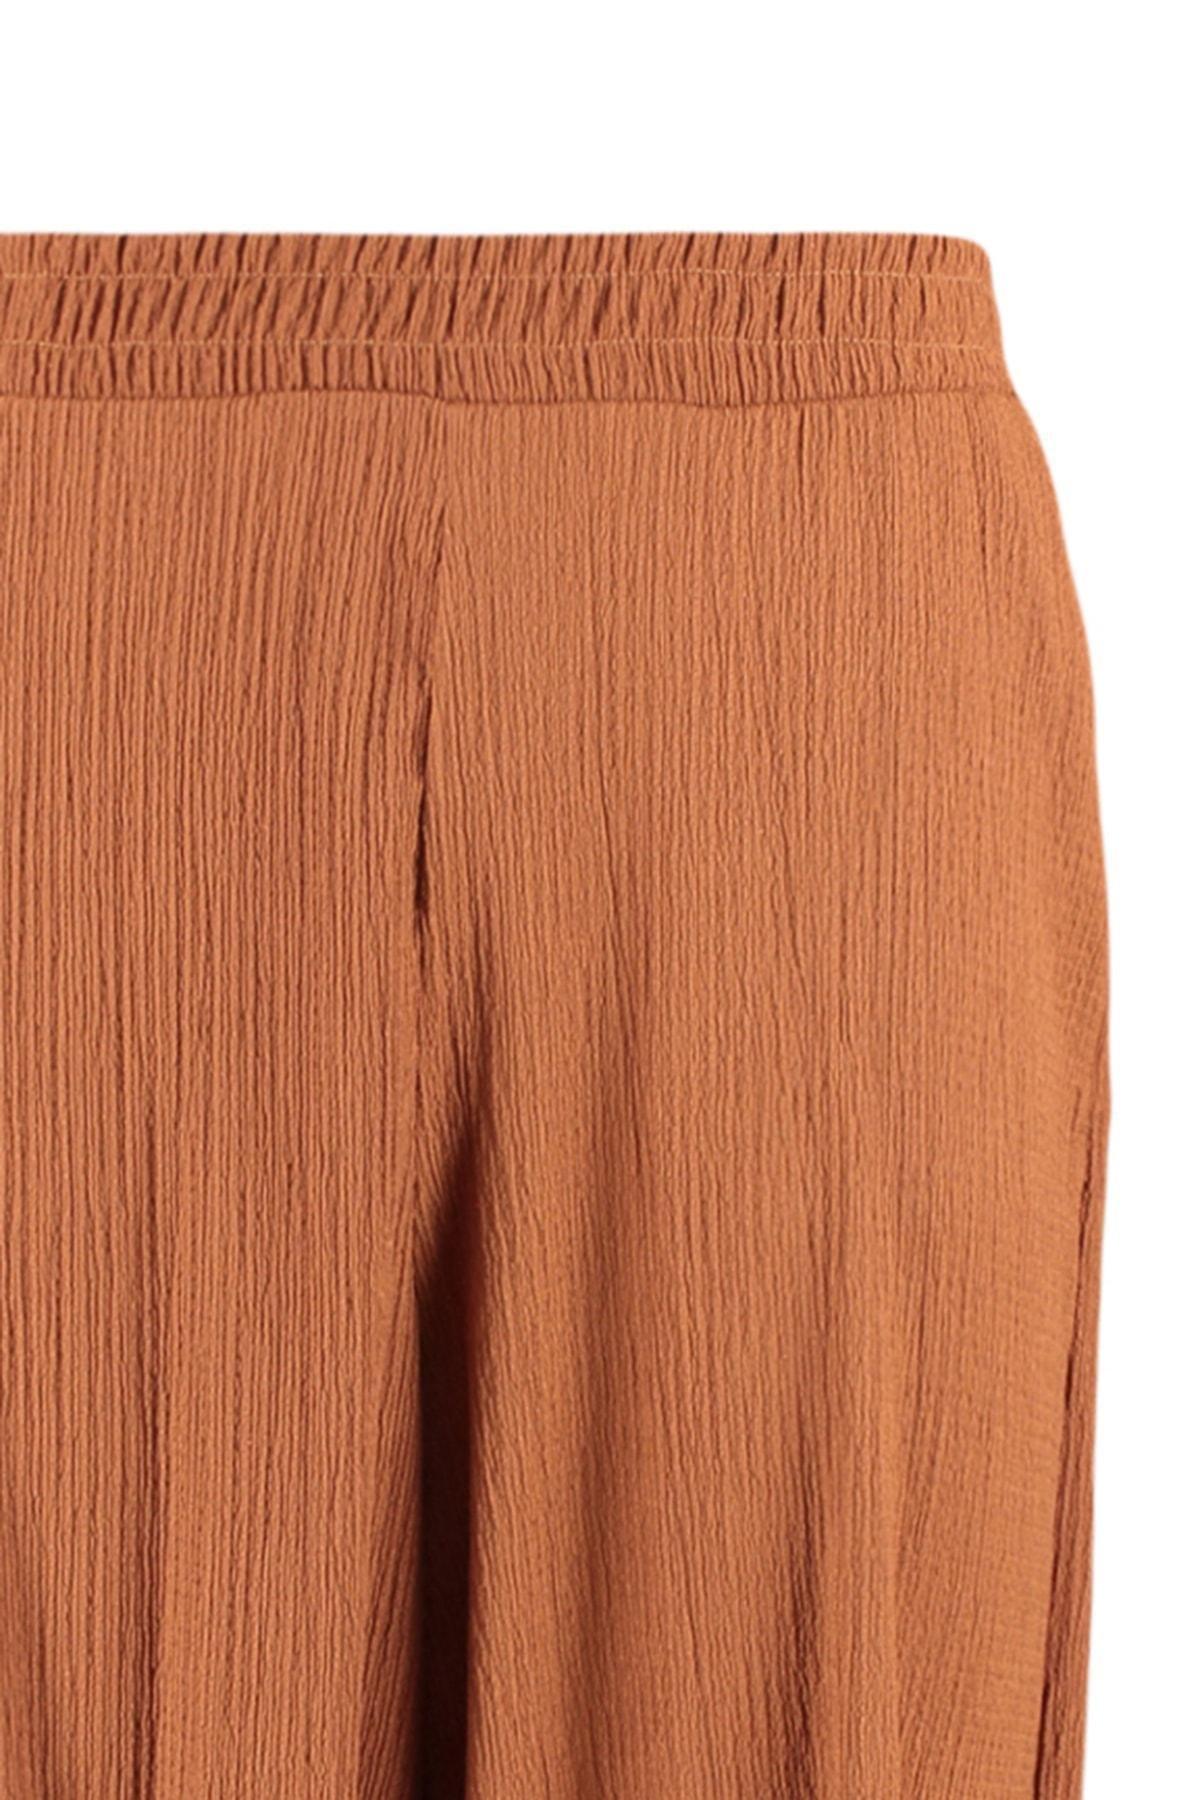 Trendyol - Brown Carrot Pants Plus Size Pants